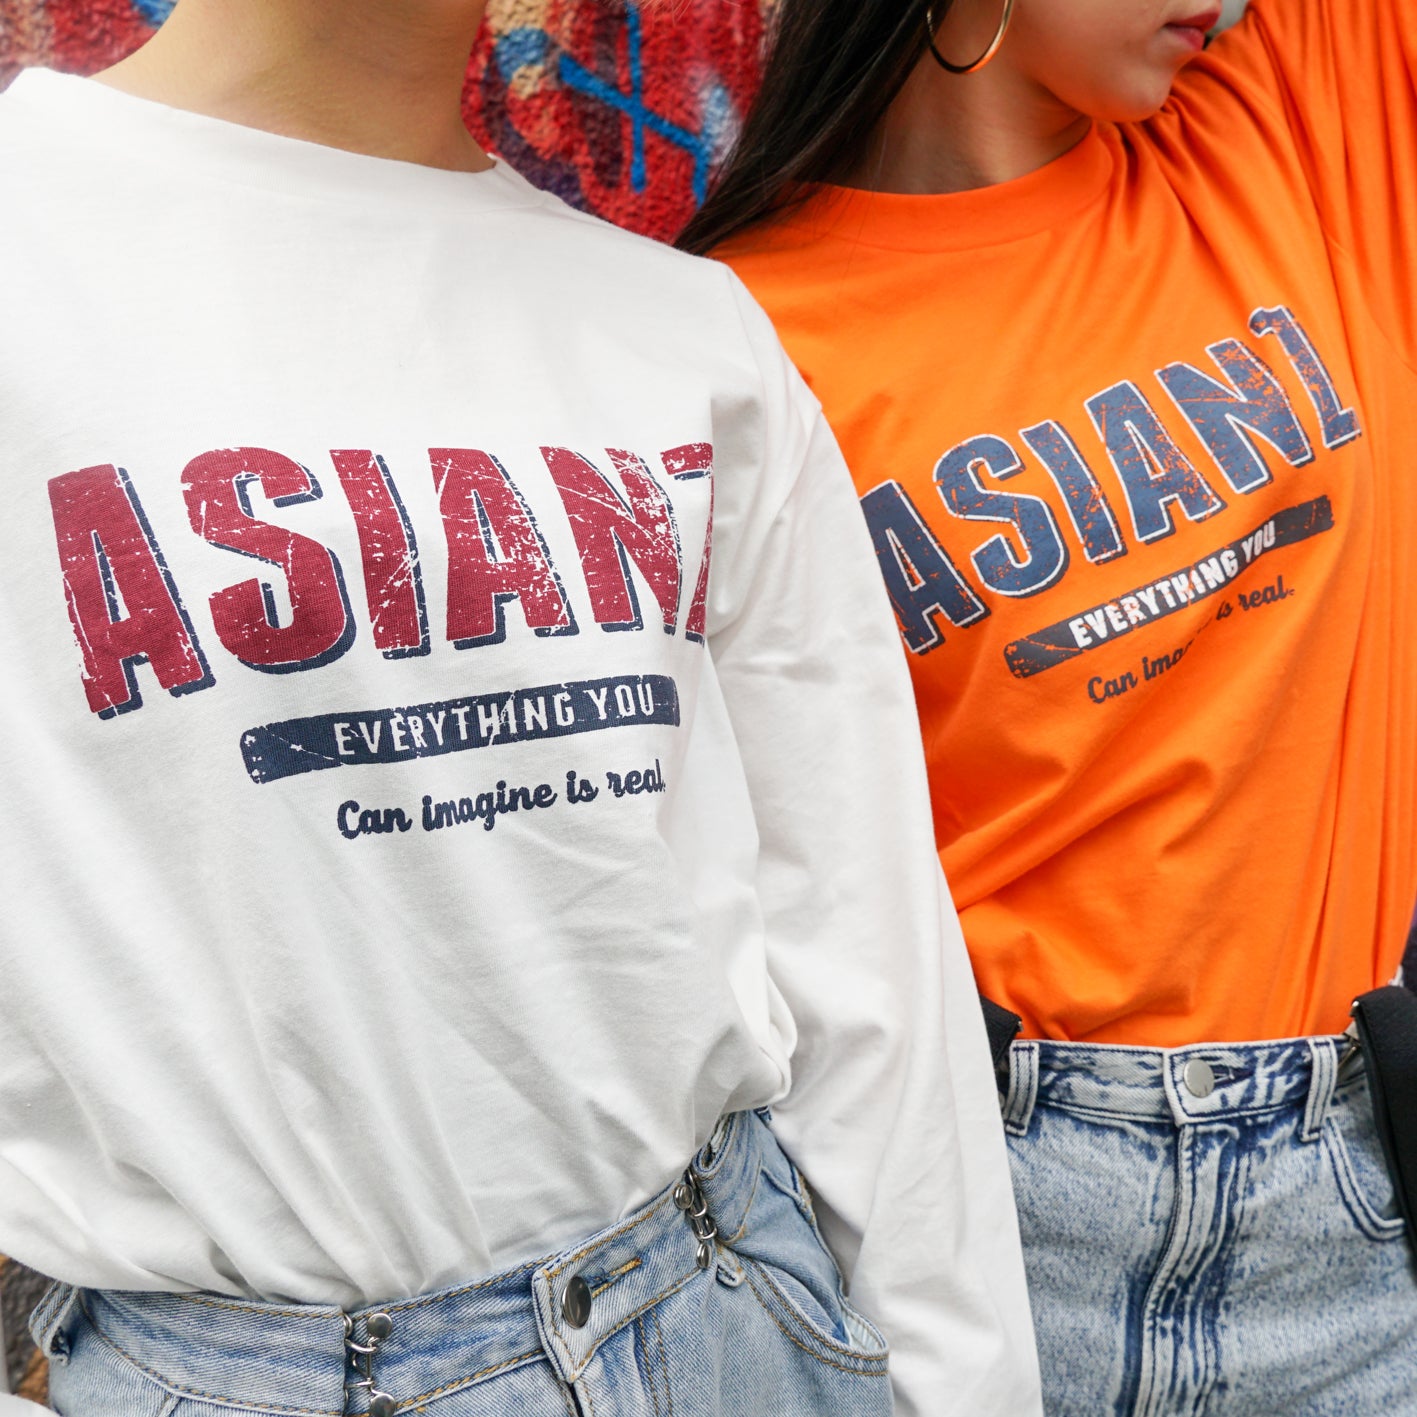 (セール商品)ASIANZ ロゴ ロングスリーブ Tシャツ